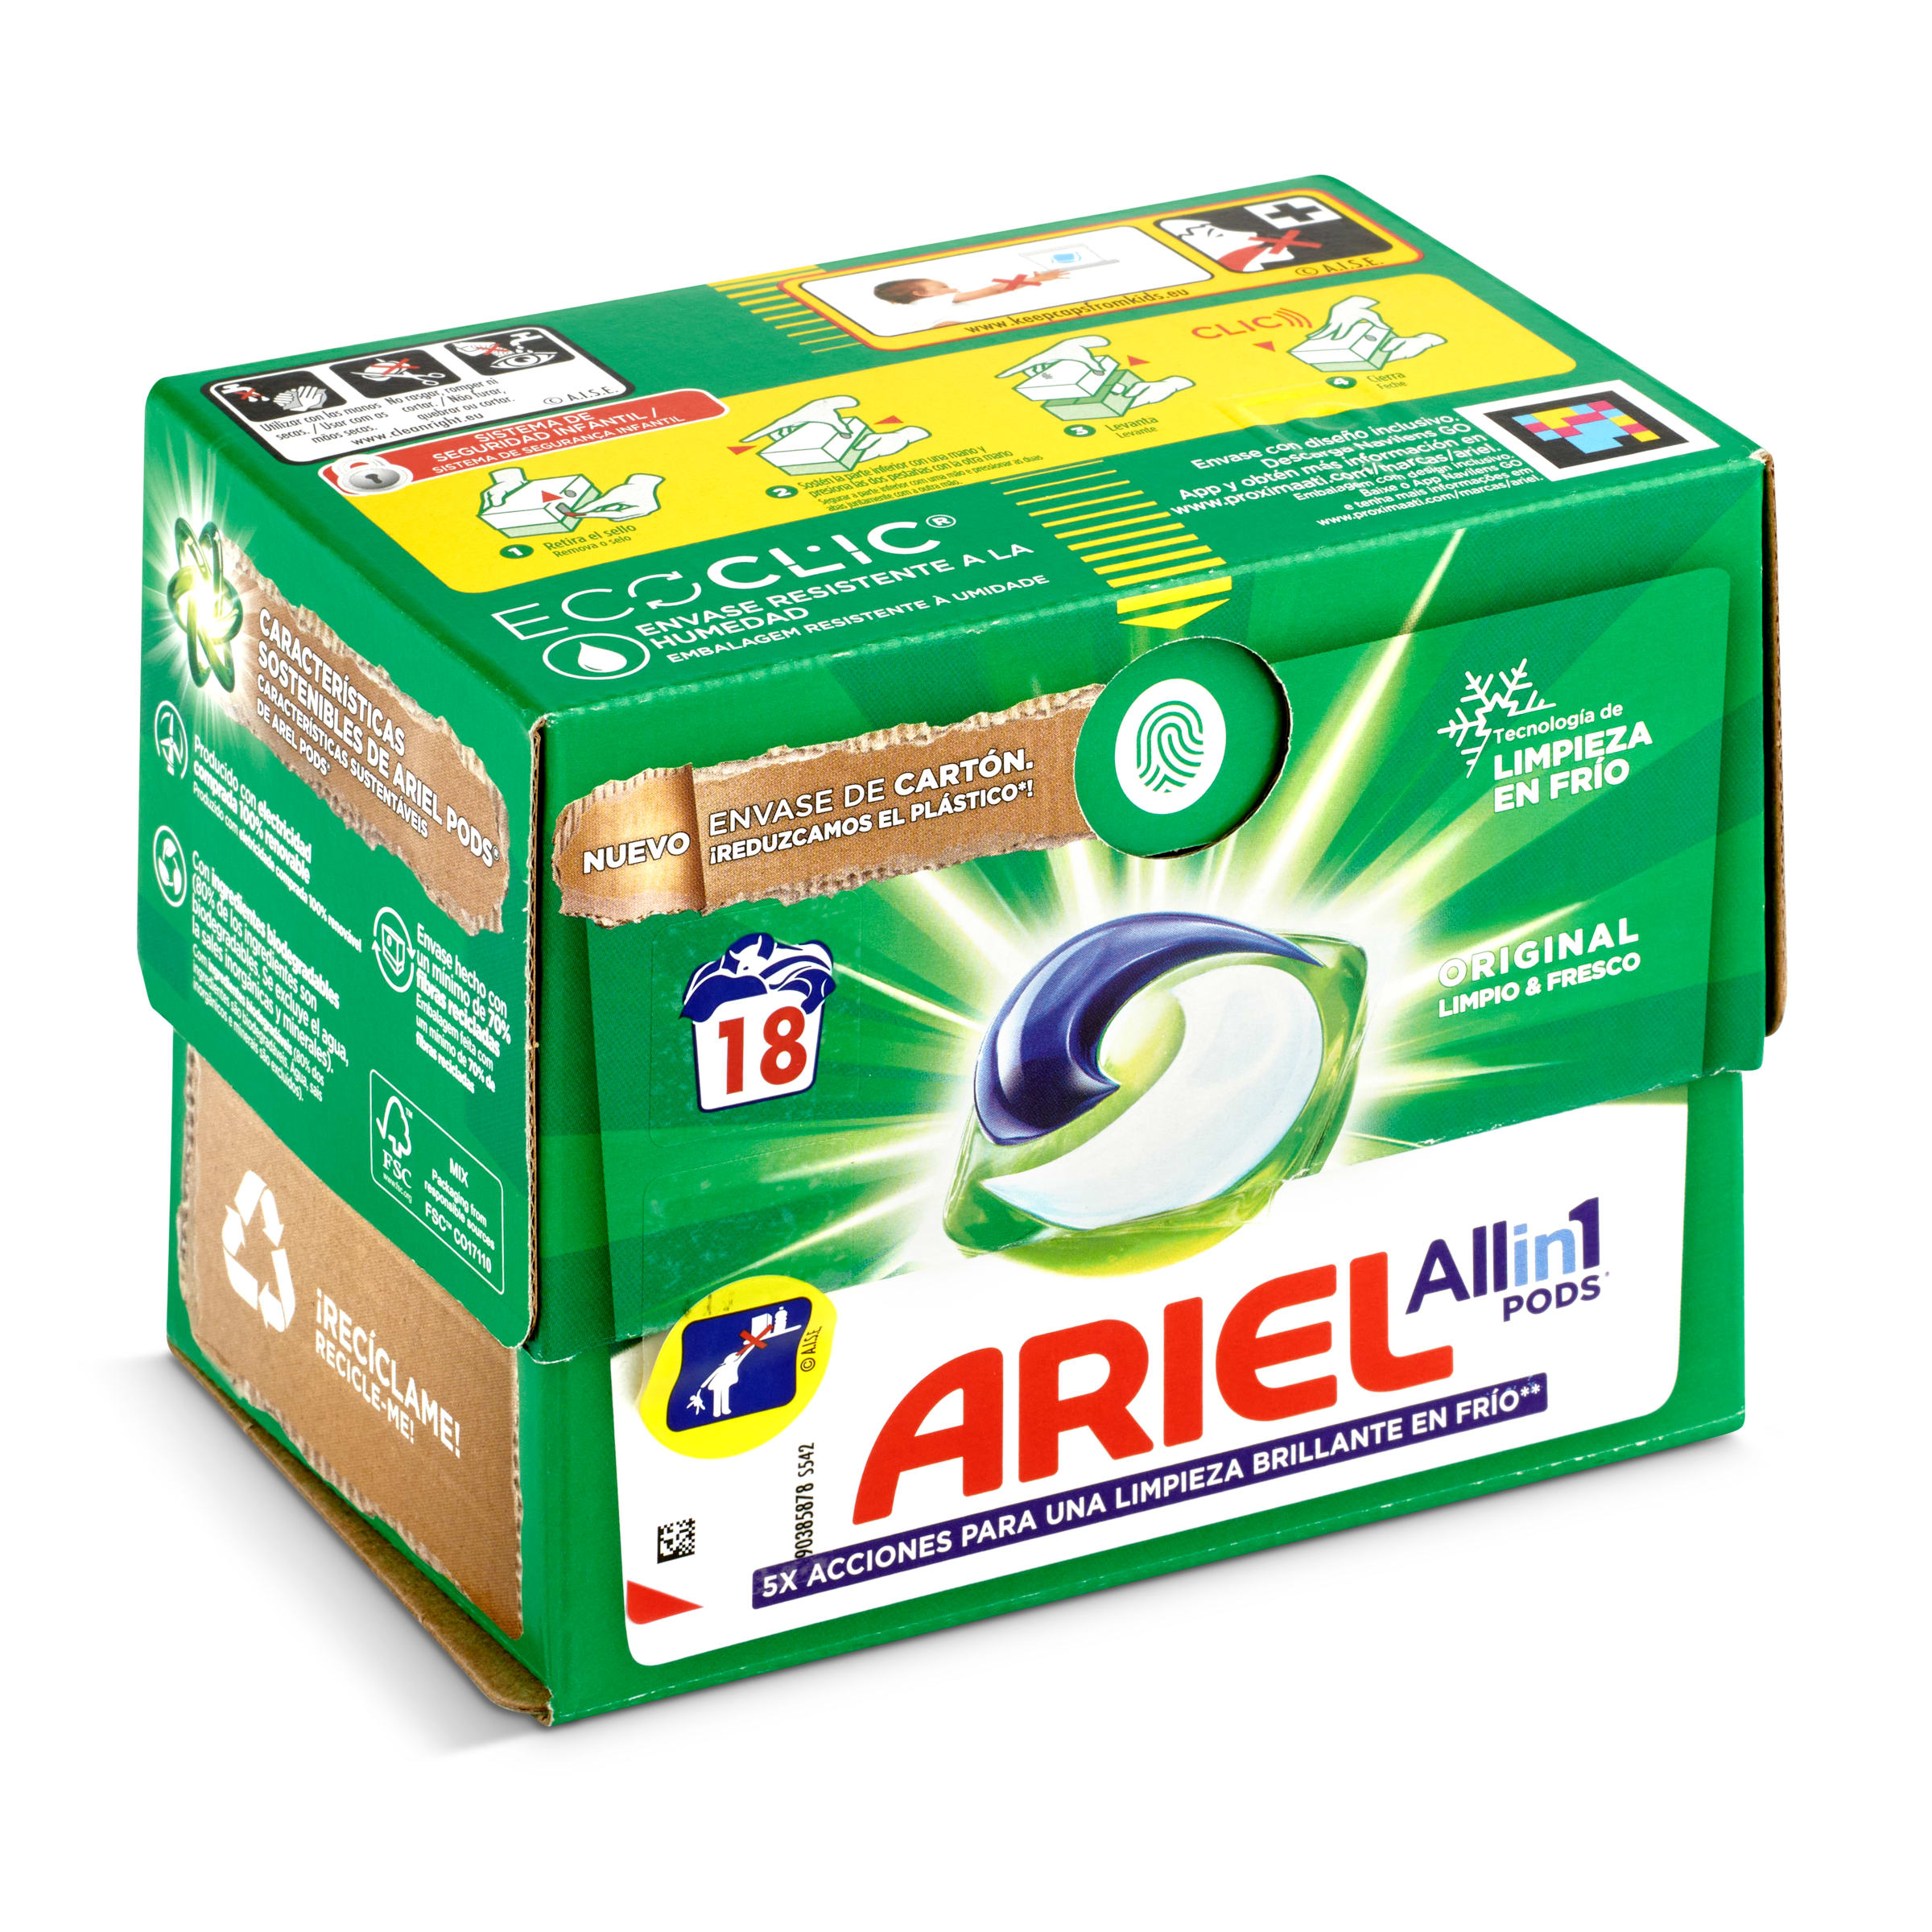 Detergente máquina todo en uno Ariel caja 18 lavados - Supermercados DIA